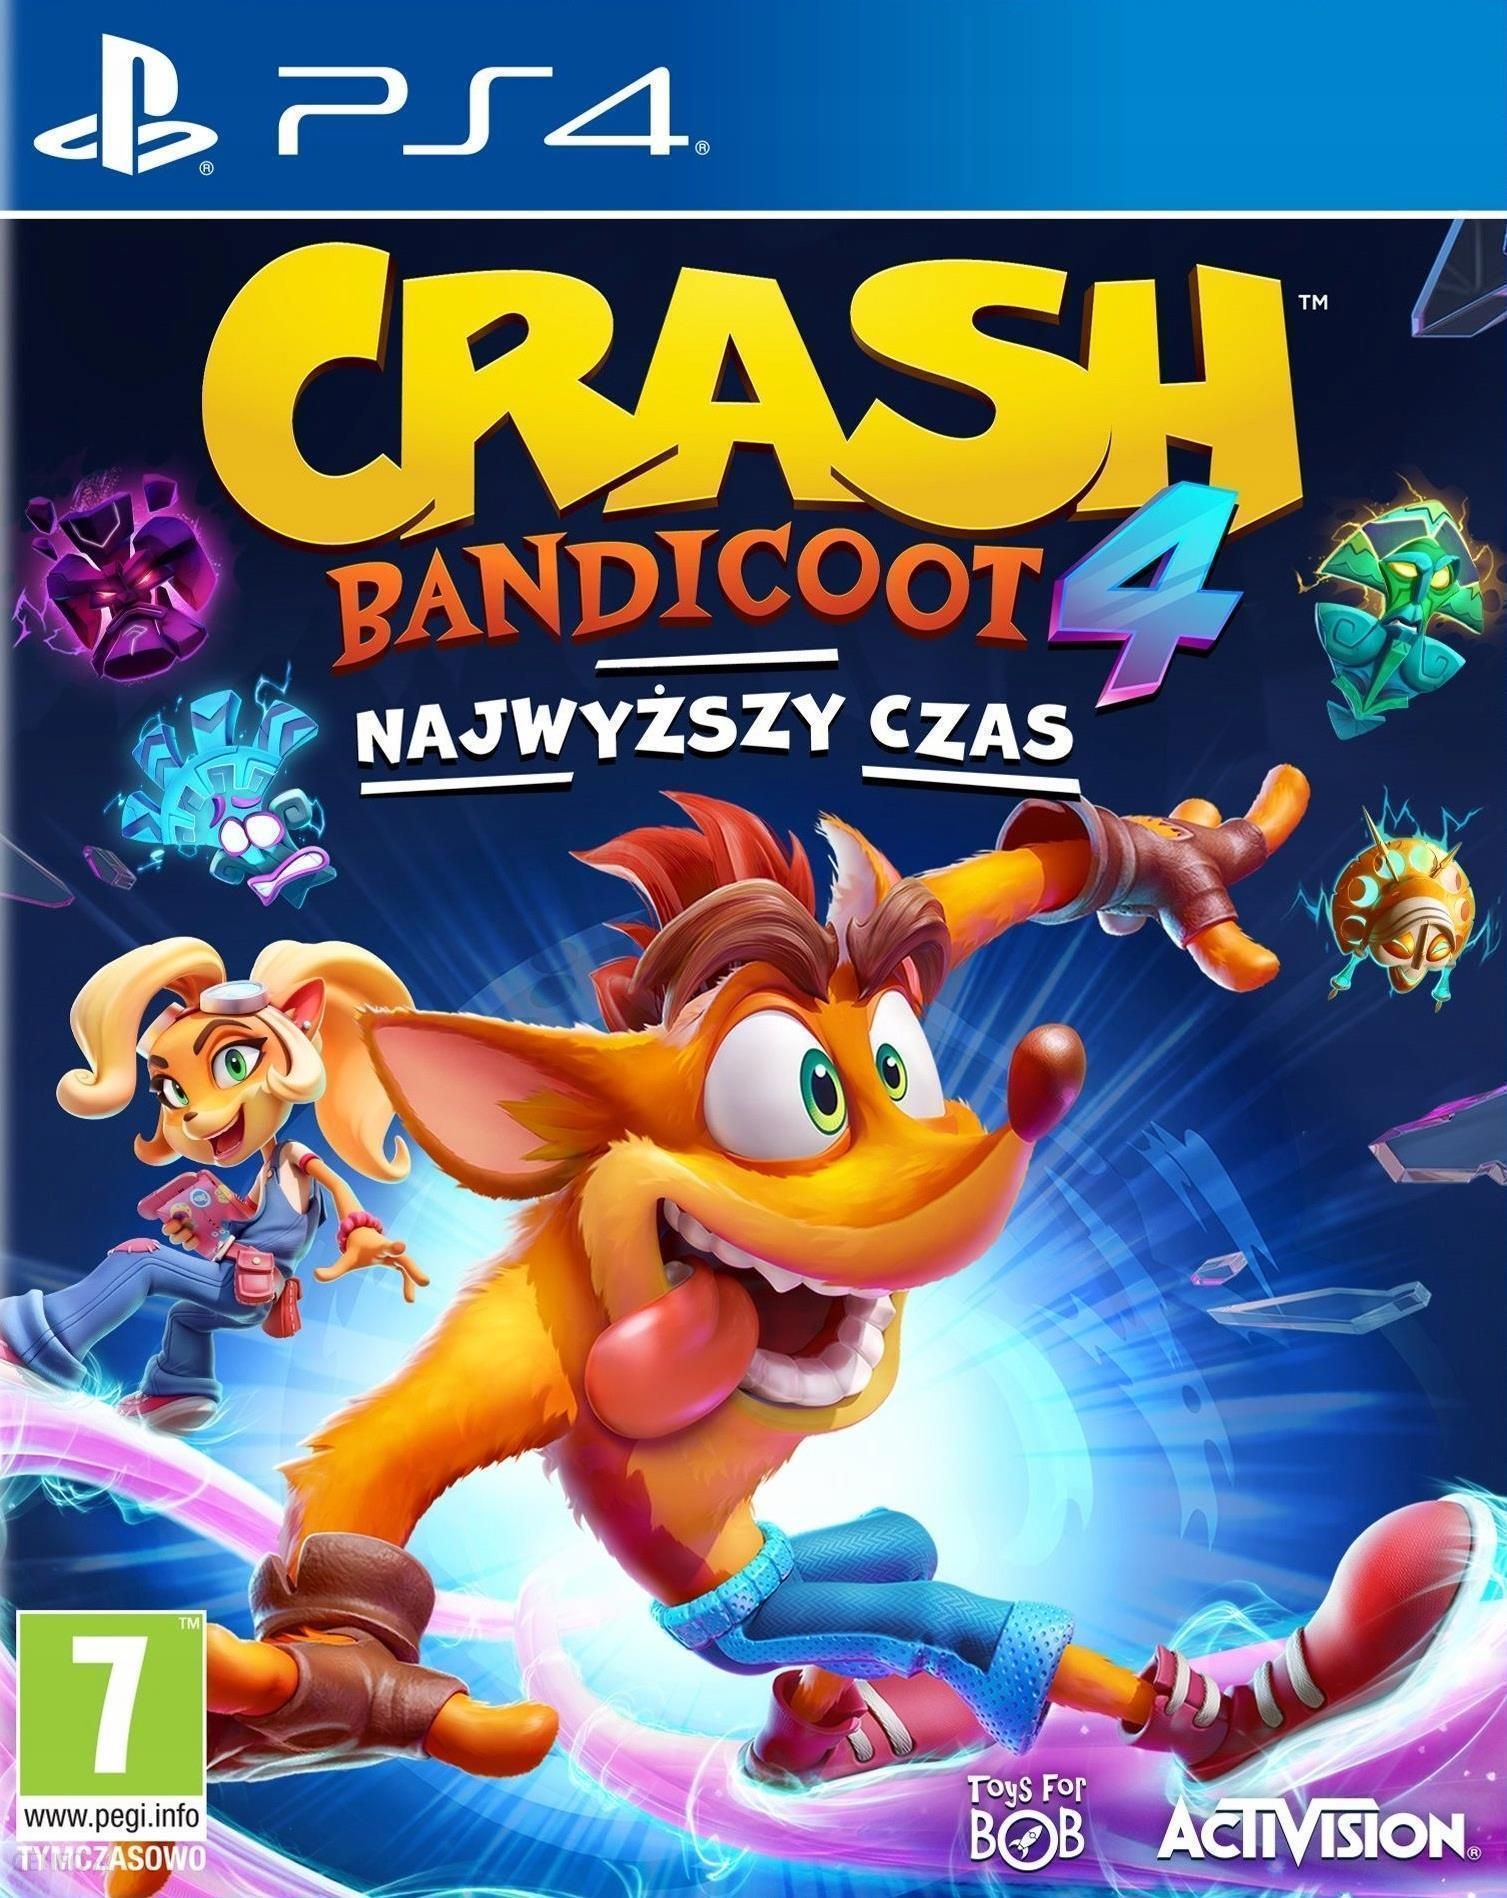   „Crash Bandicoot 4 It's Time“ (PS4 žaidimas)